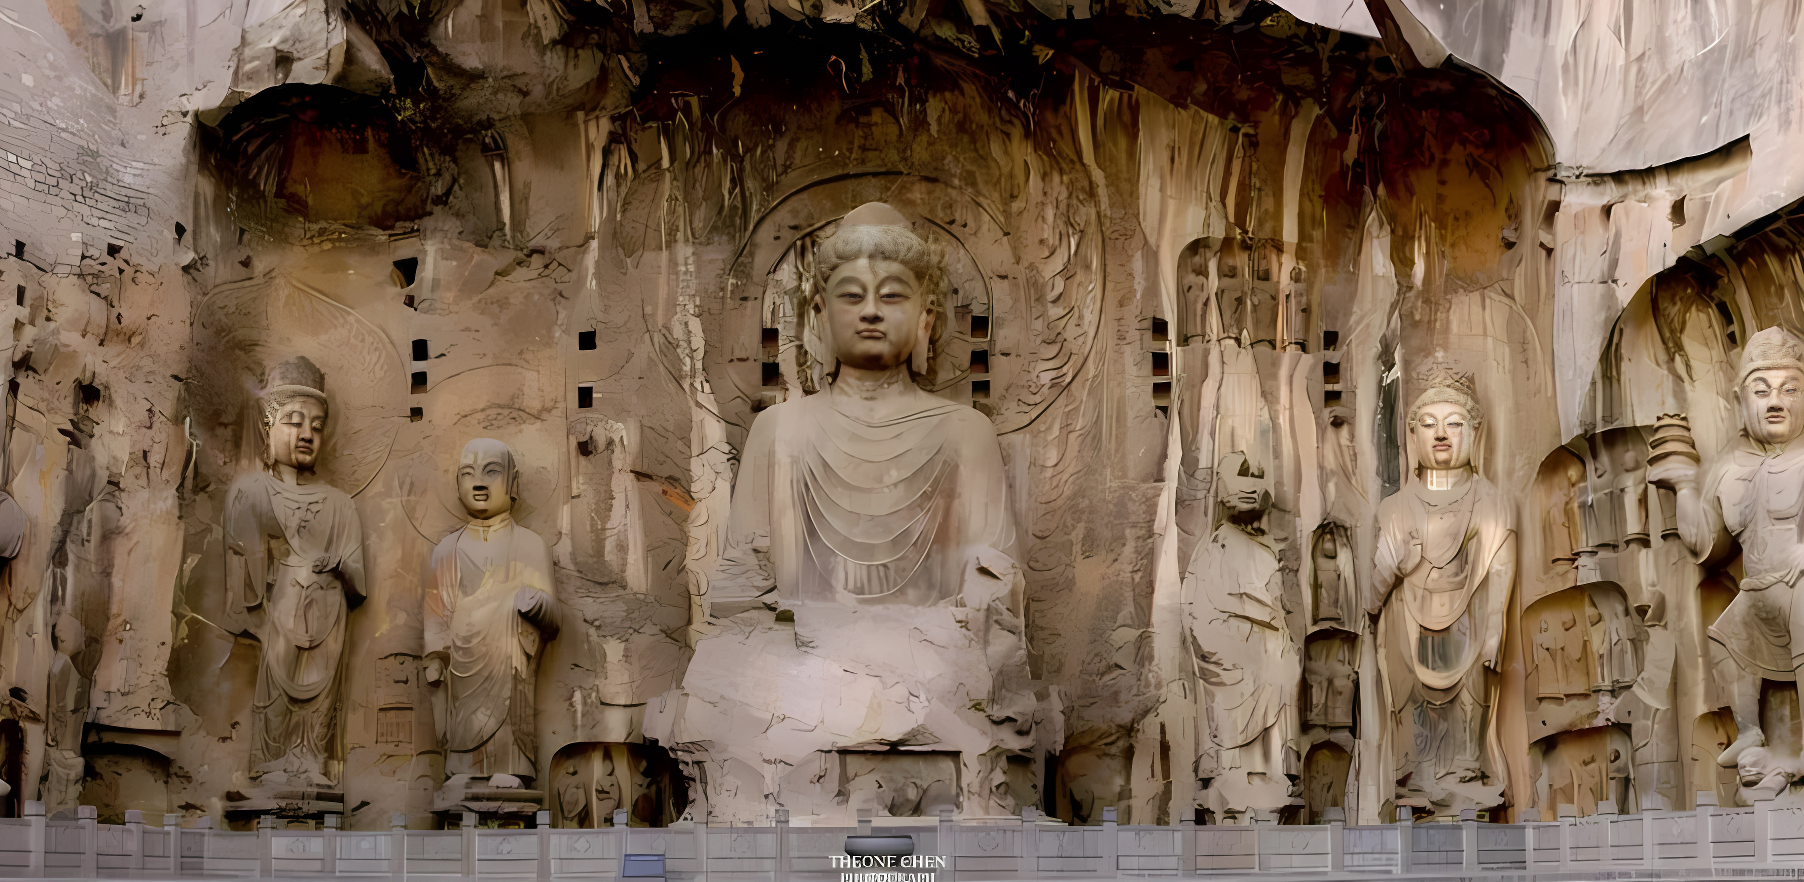 这是一张展示多尊佛像的照片，佛像雕刻精细，位于岩石洞穴中，体现了丰富的宗教艺术和历史文化价值。